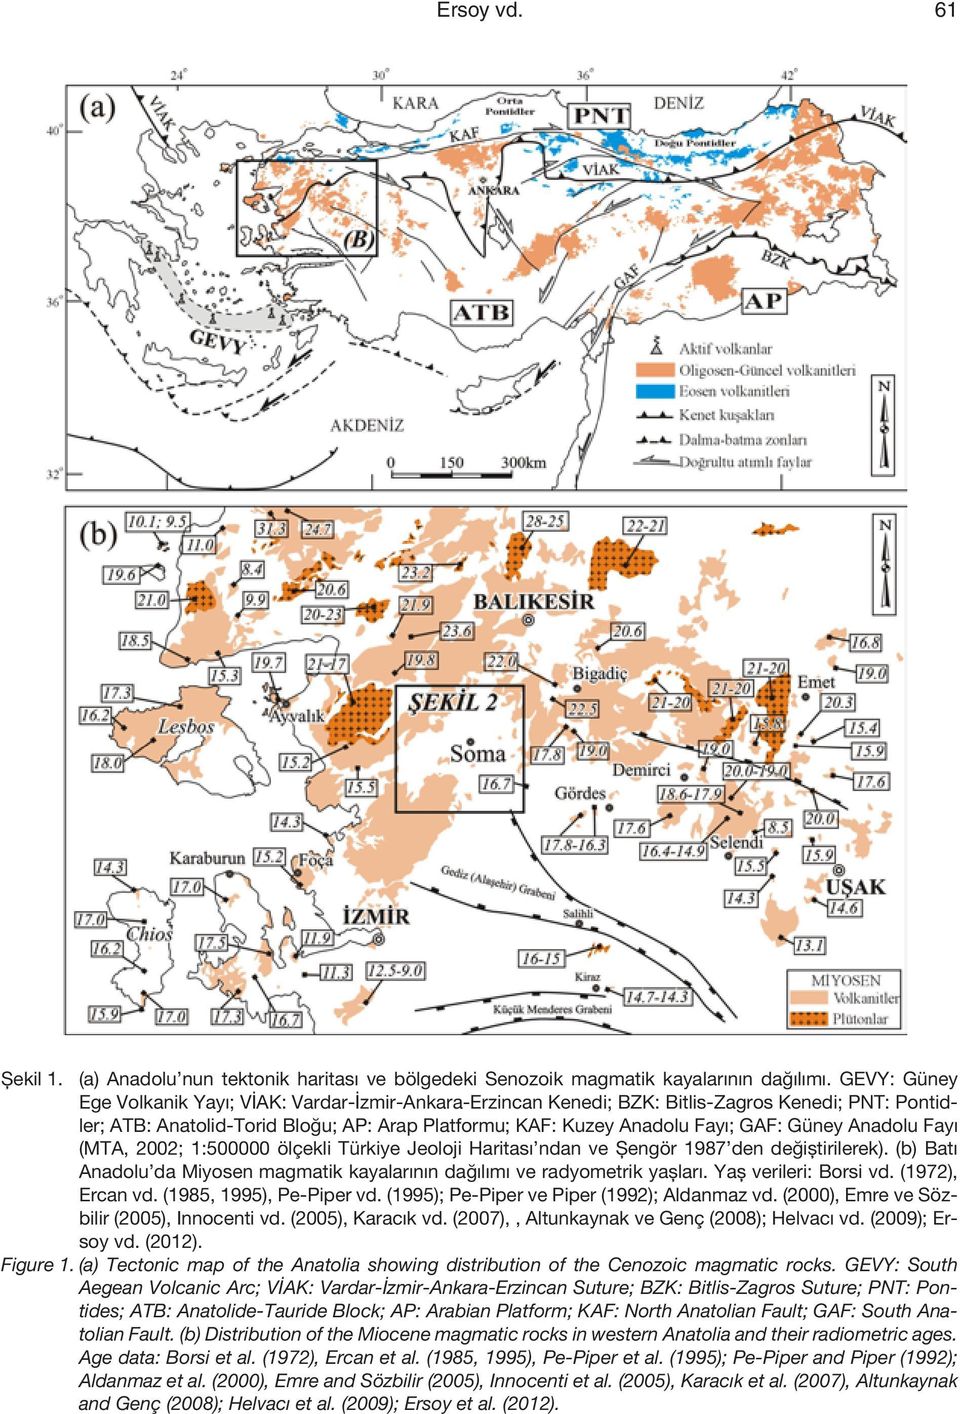 Anadolu Fayı (MTA, 2002; 1:500000 ölçekli Türkiye Jeoloji Haritası ndan ve Şengör 1987 den değiştirilerek). (b) Batı Anadolu da Miyosen magmatik kayalarının dağılımı ve radyometrik yaşları.